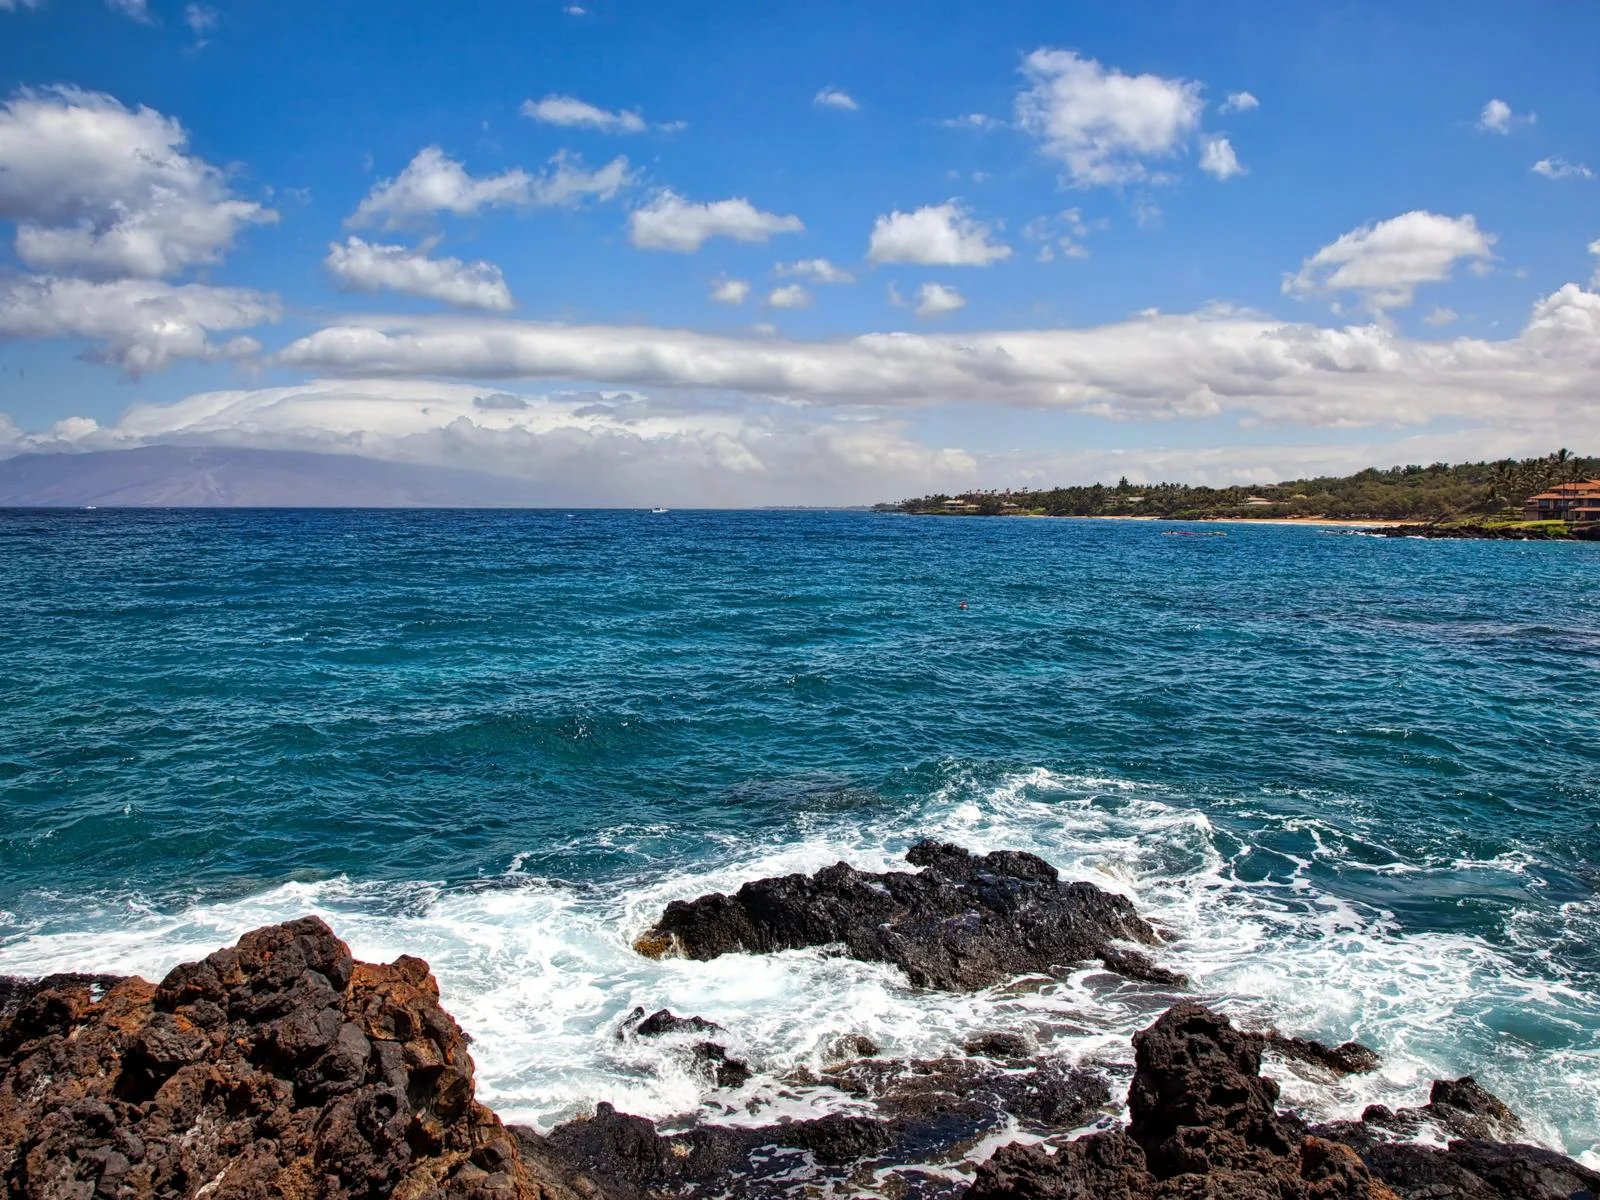 Rocky Five Graves, one of the best snorkeling spots in Hawaii, snorkeling spot near Makena beach on Maui